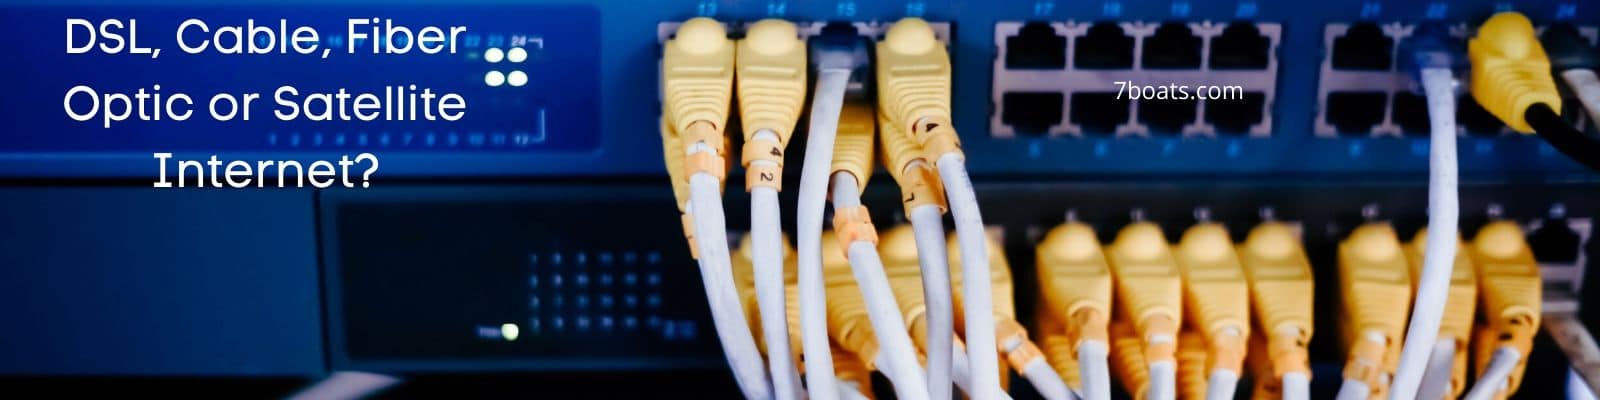 Cable vs DSL vs Fiber Internet Explained 